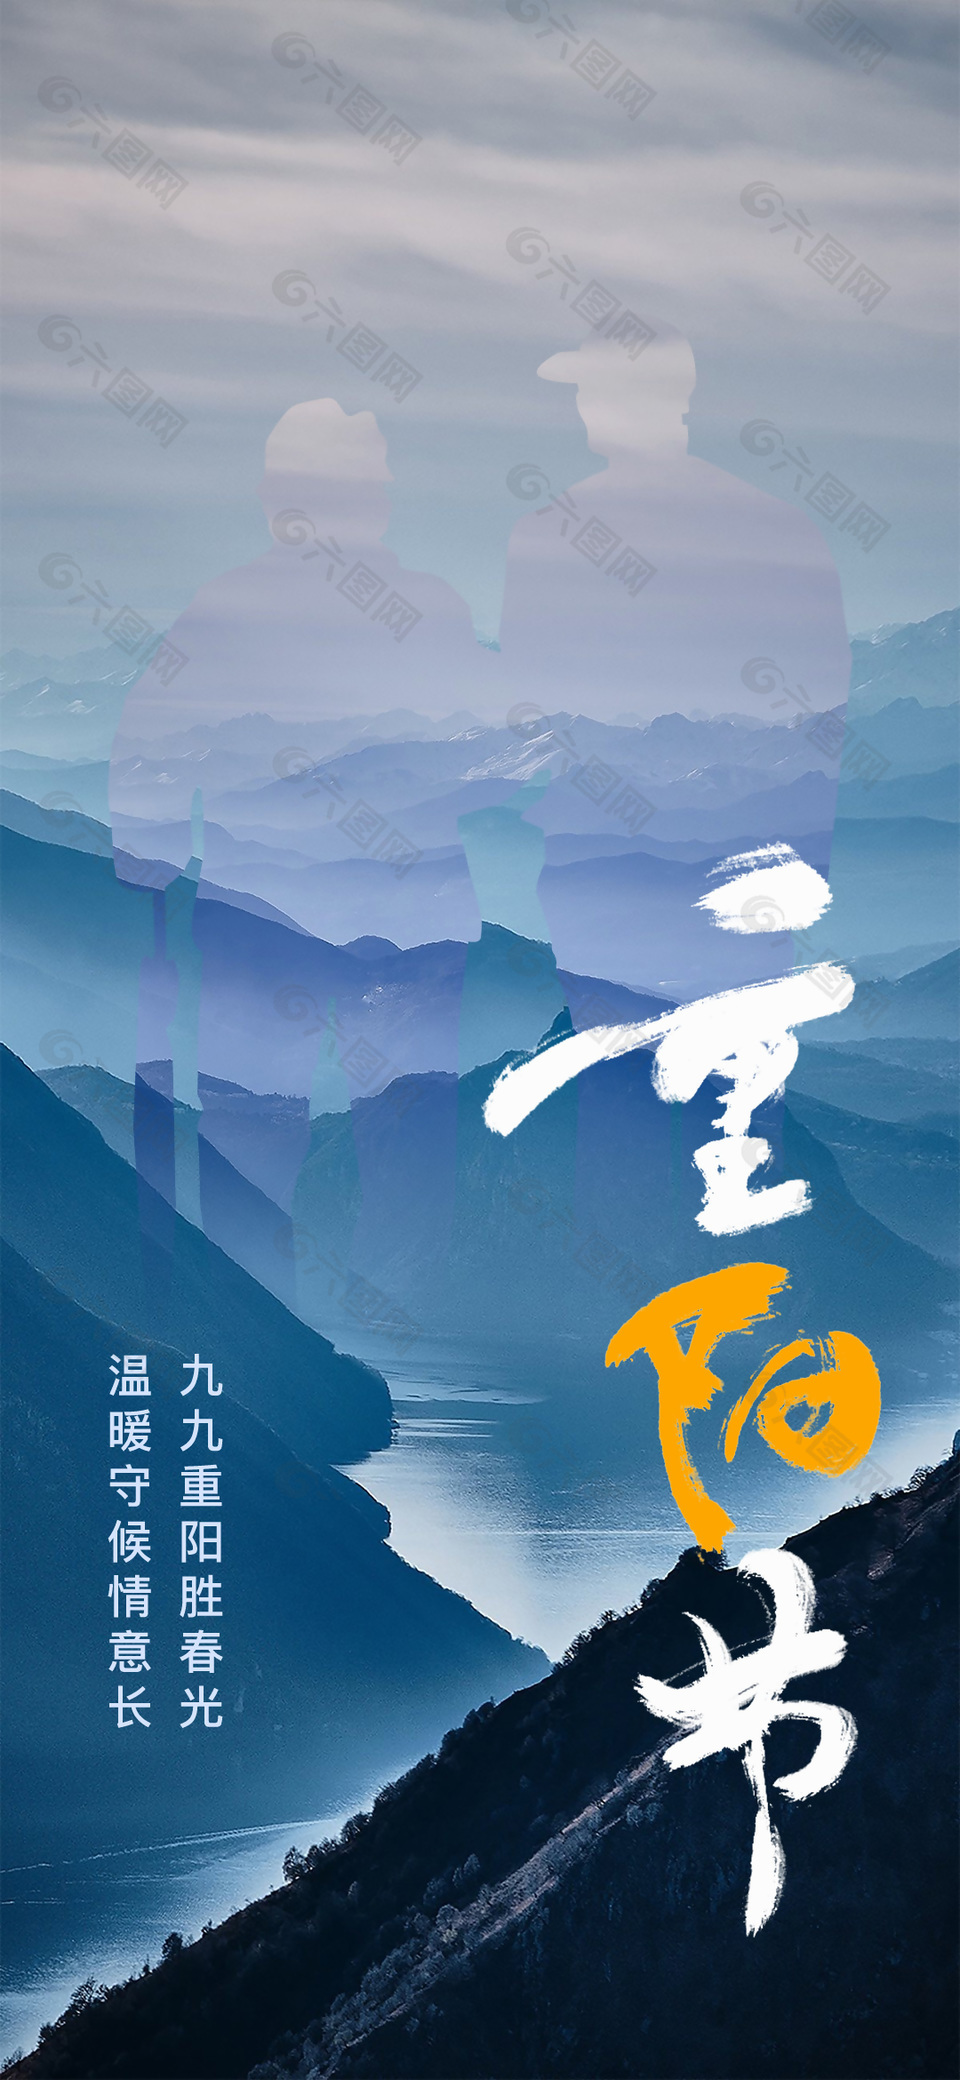 九九重阳节老人剪影创意宣传海报设计